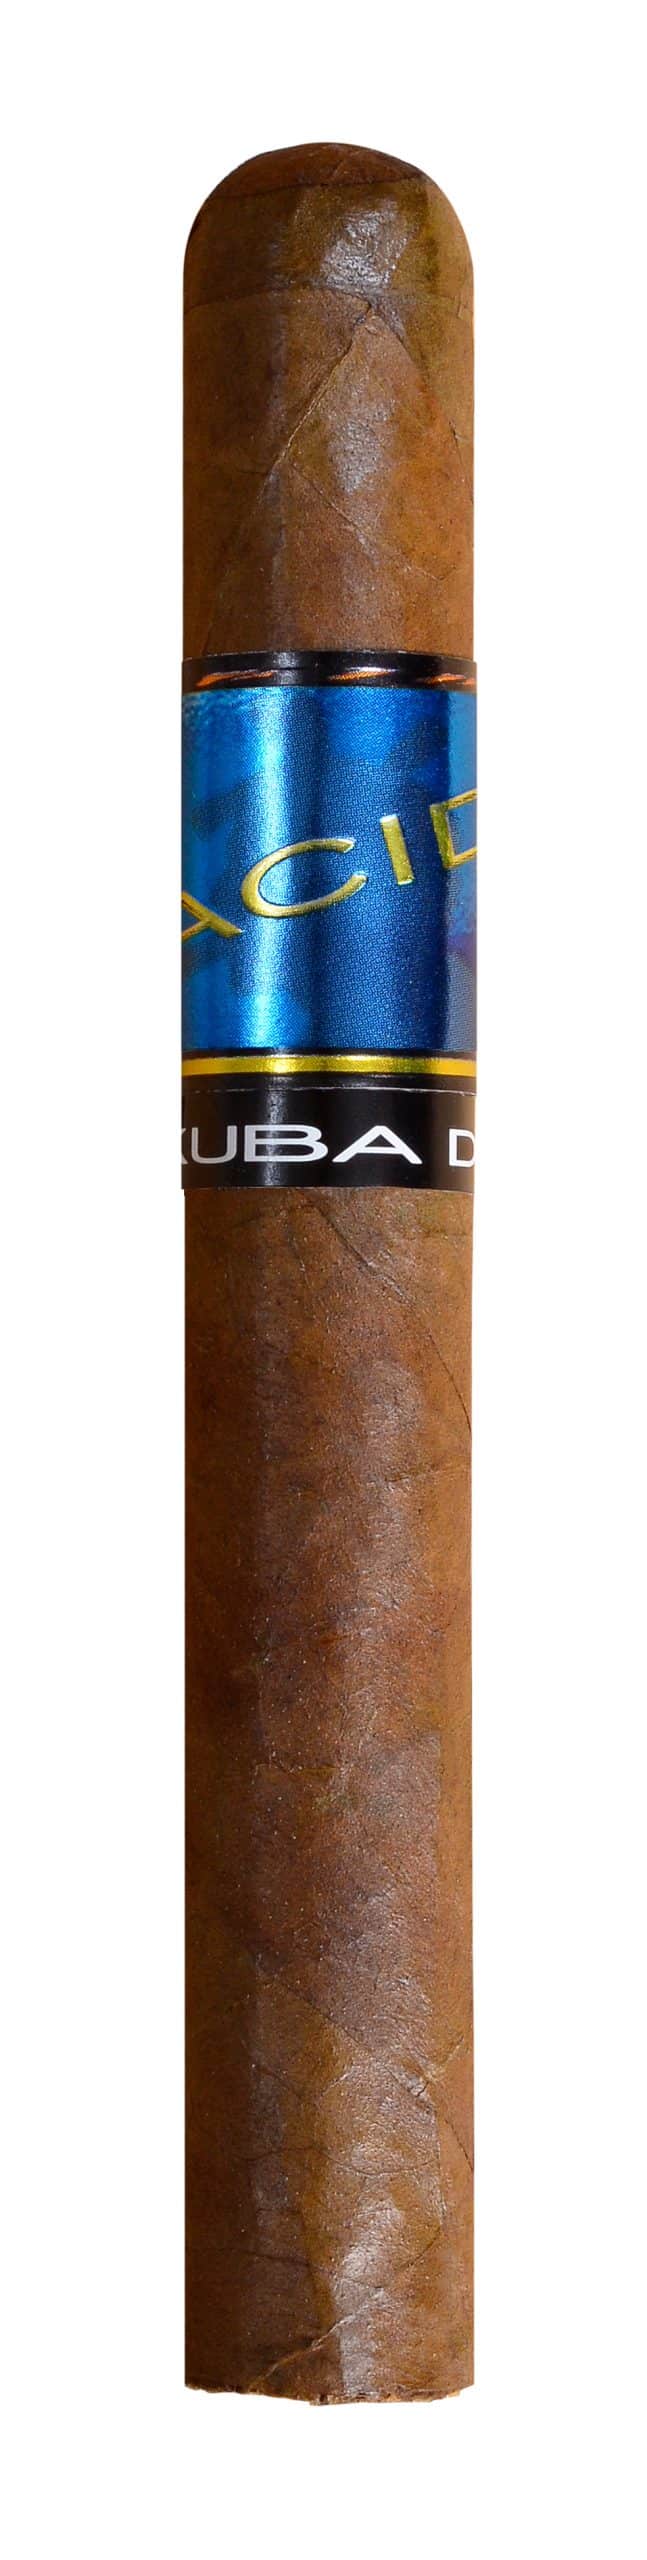 single acid kuba deluxe cigar